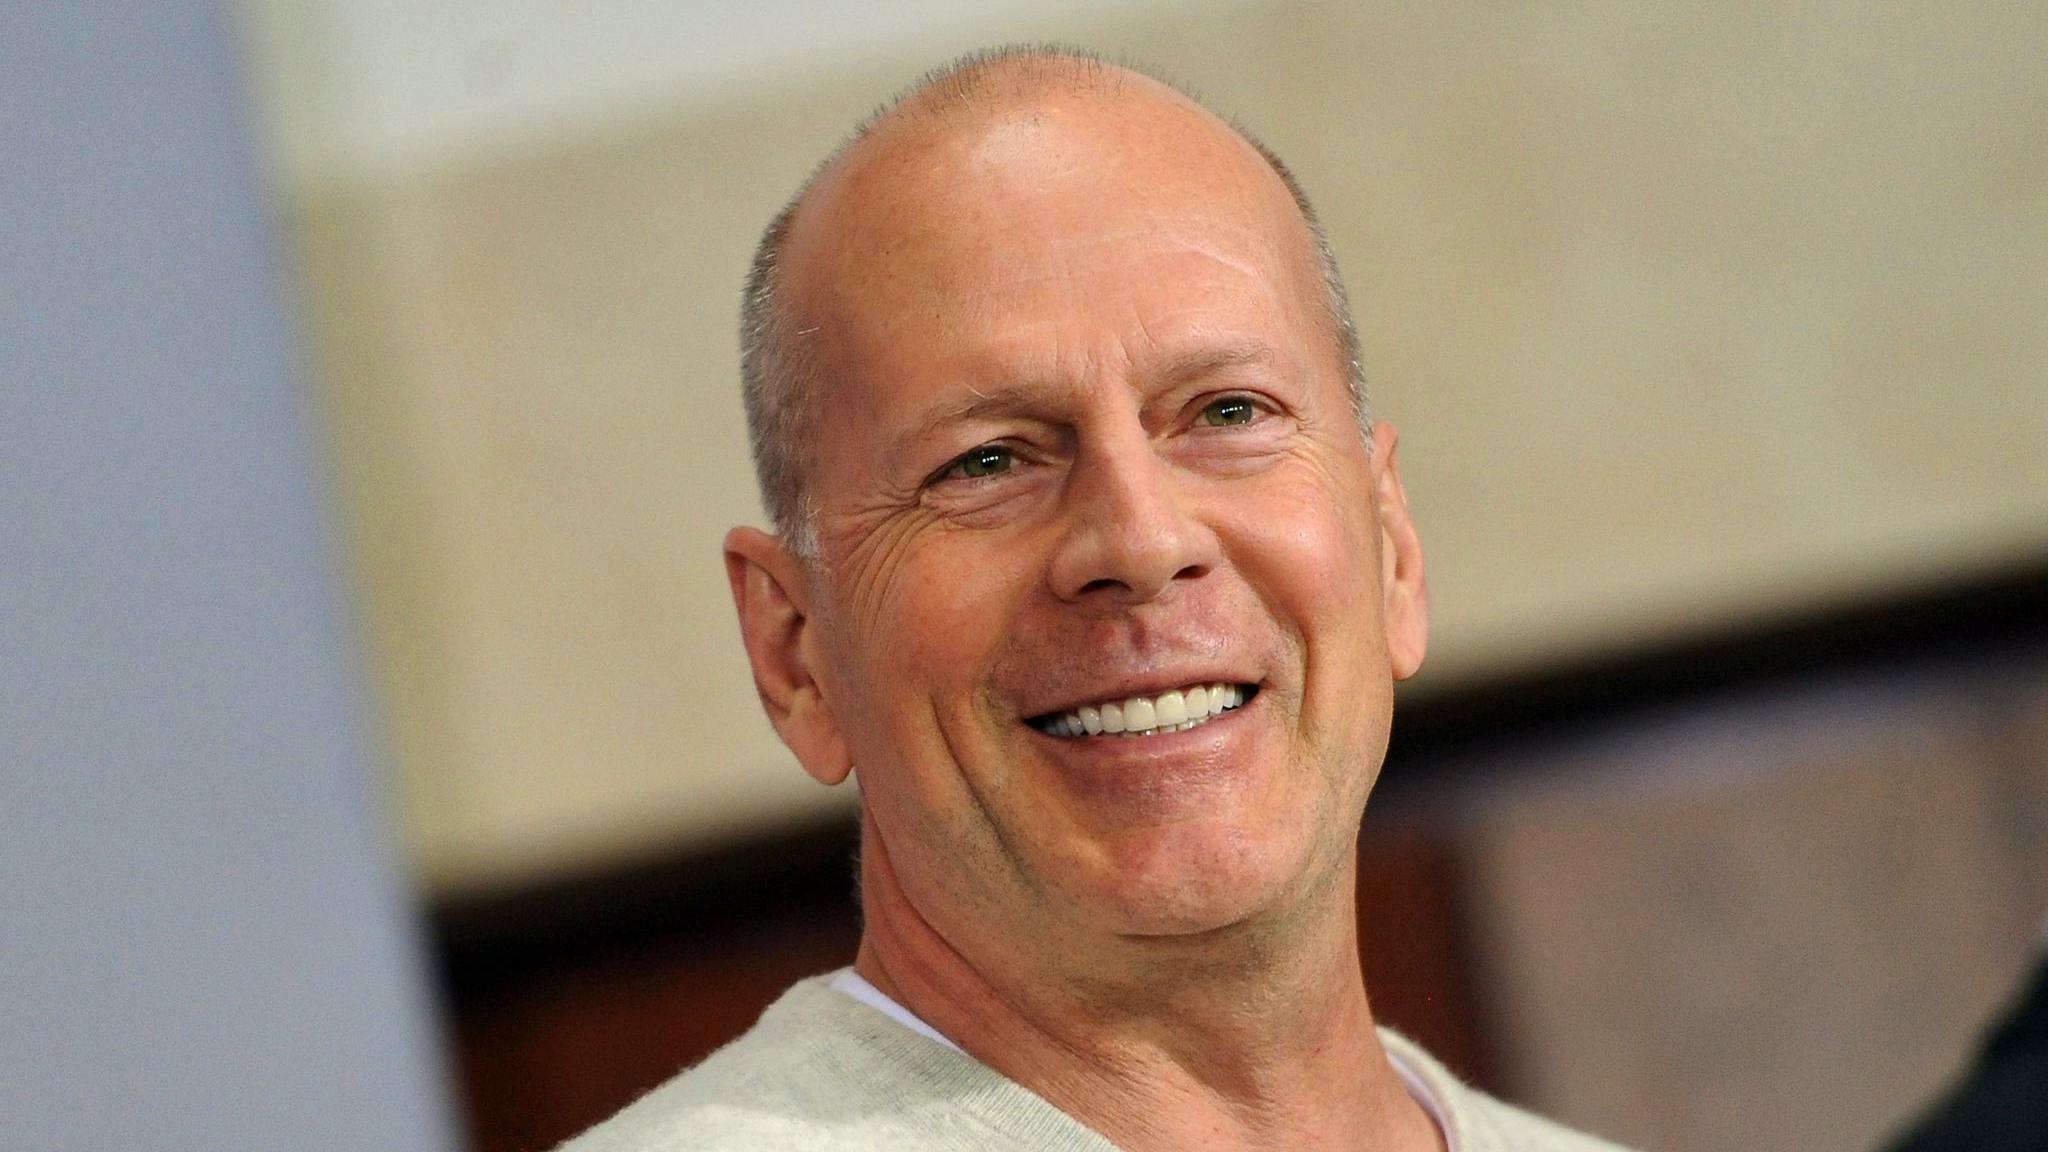 US-Schauspieler Bruce Willis will wegen gesundheitlicher Probleme seine Schauspieler-Karriere beenden.